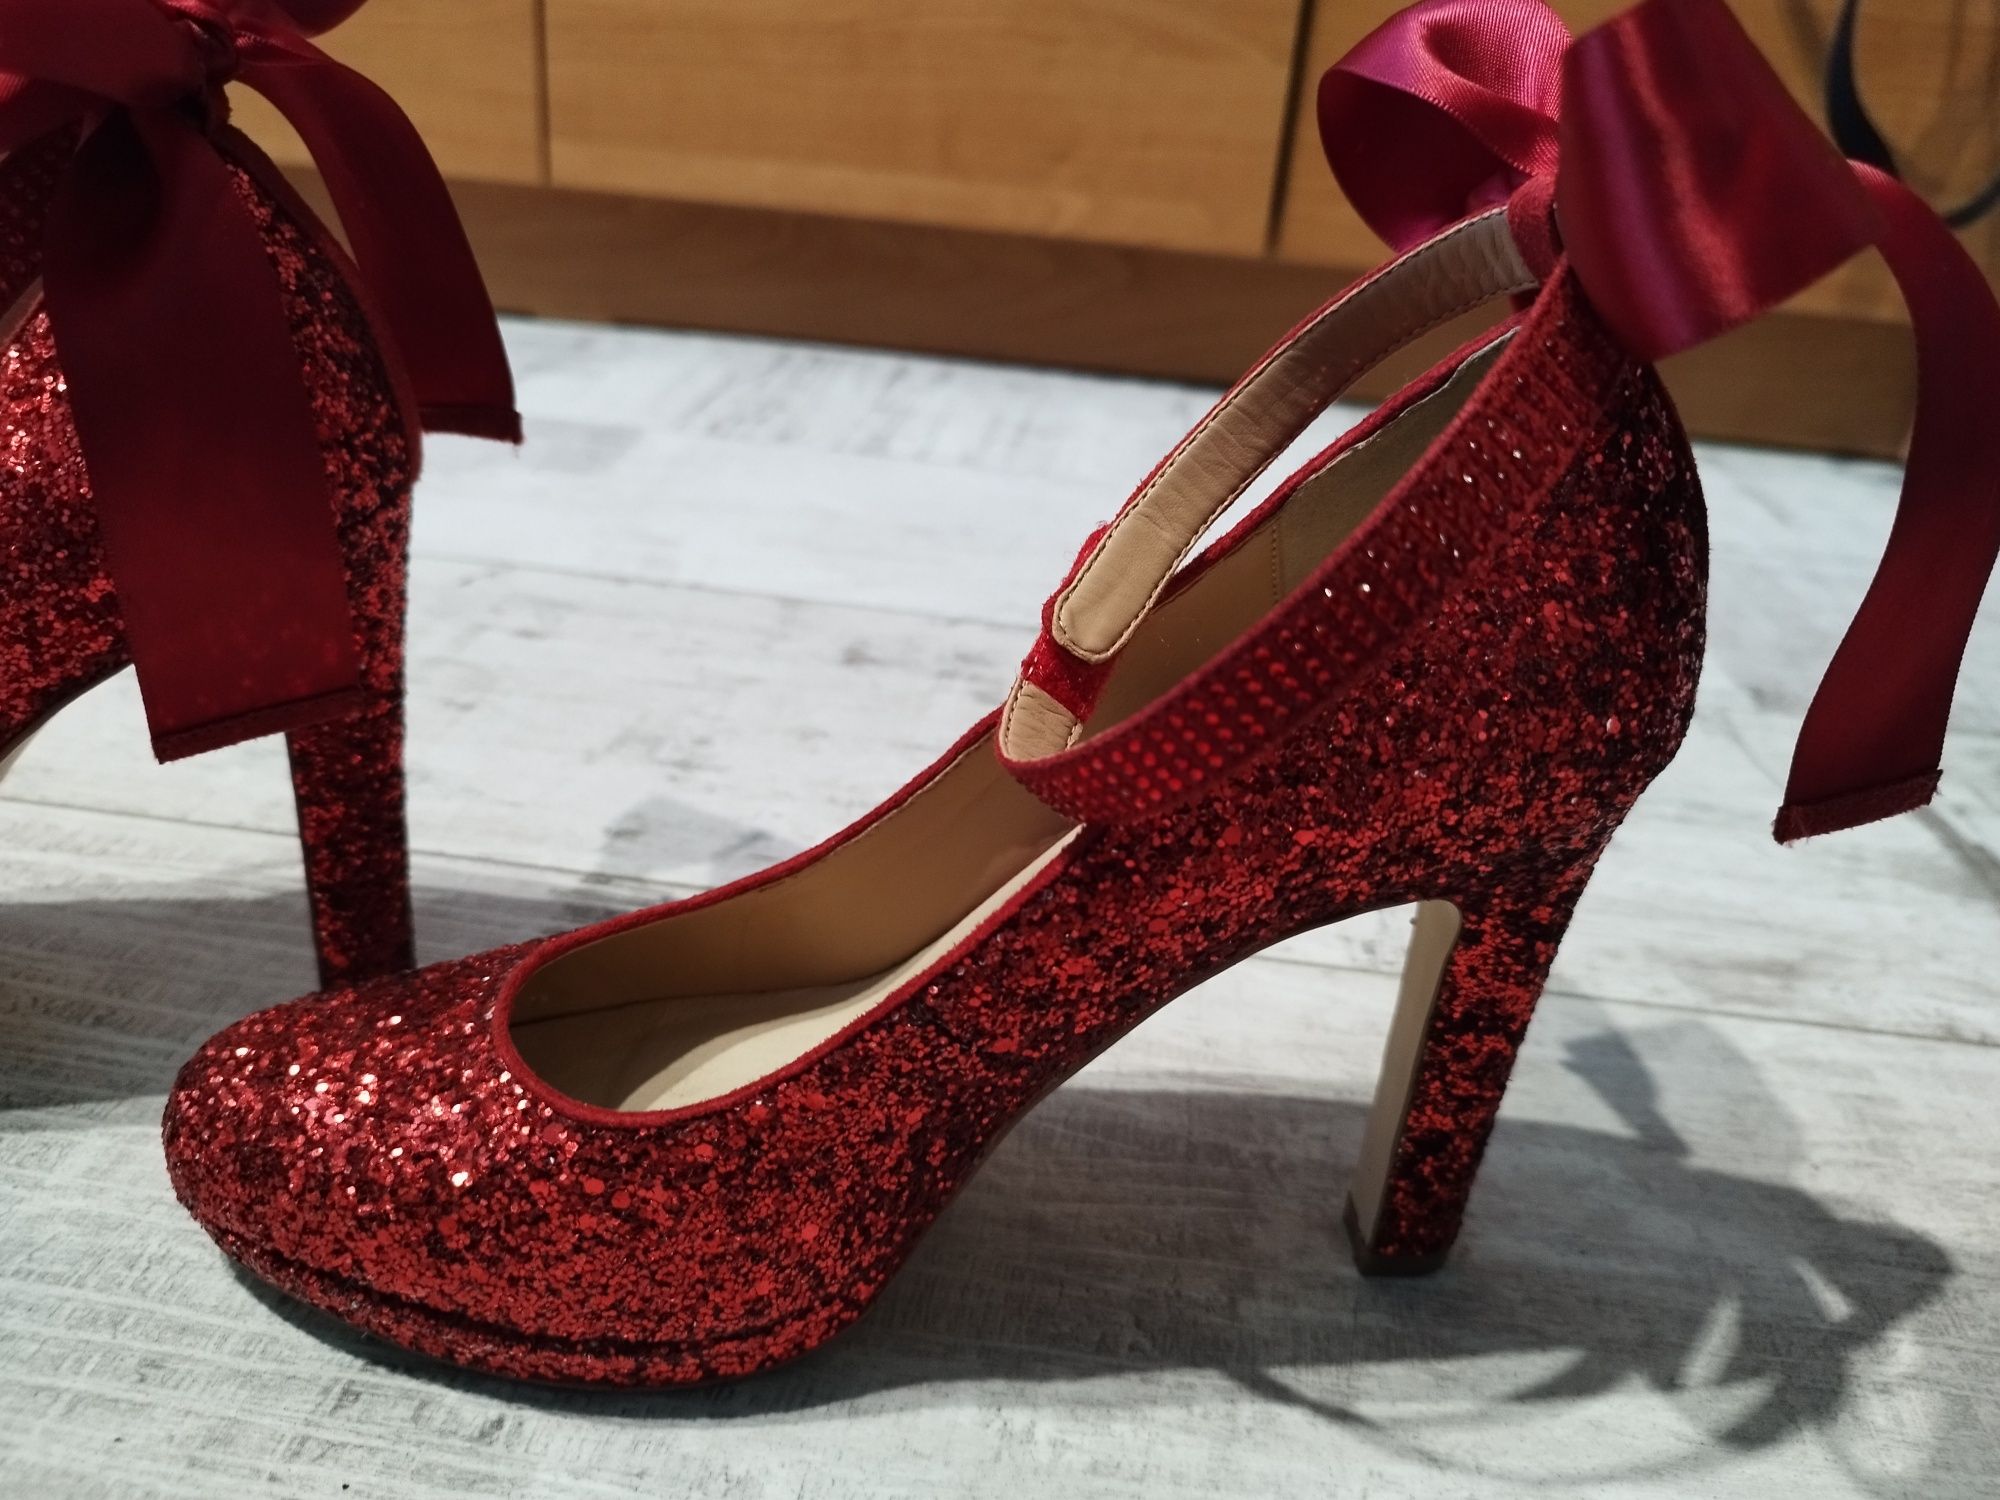 Buty szpilki piękne czerwone